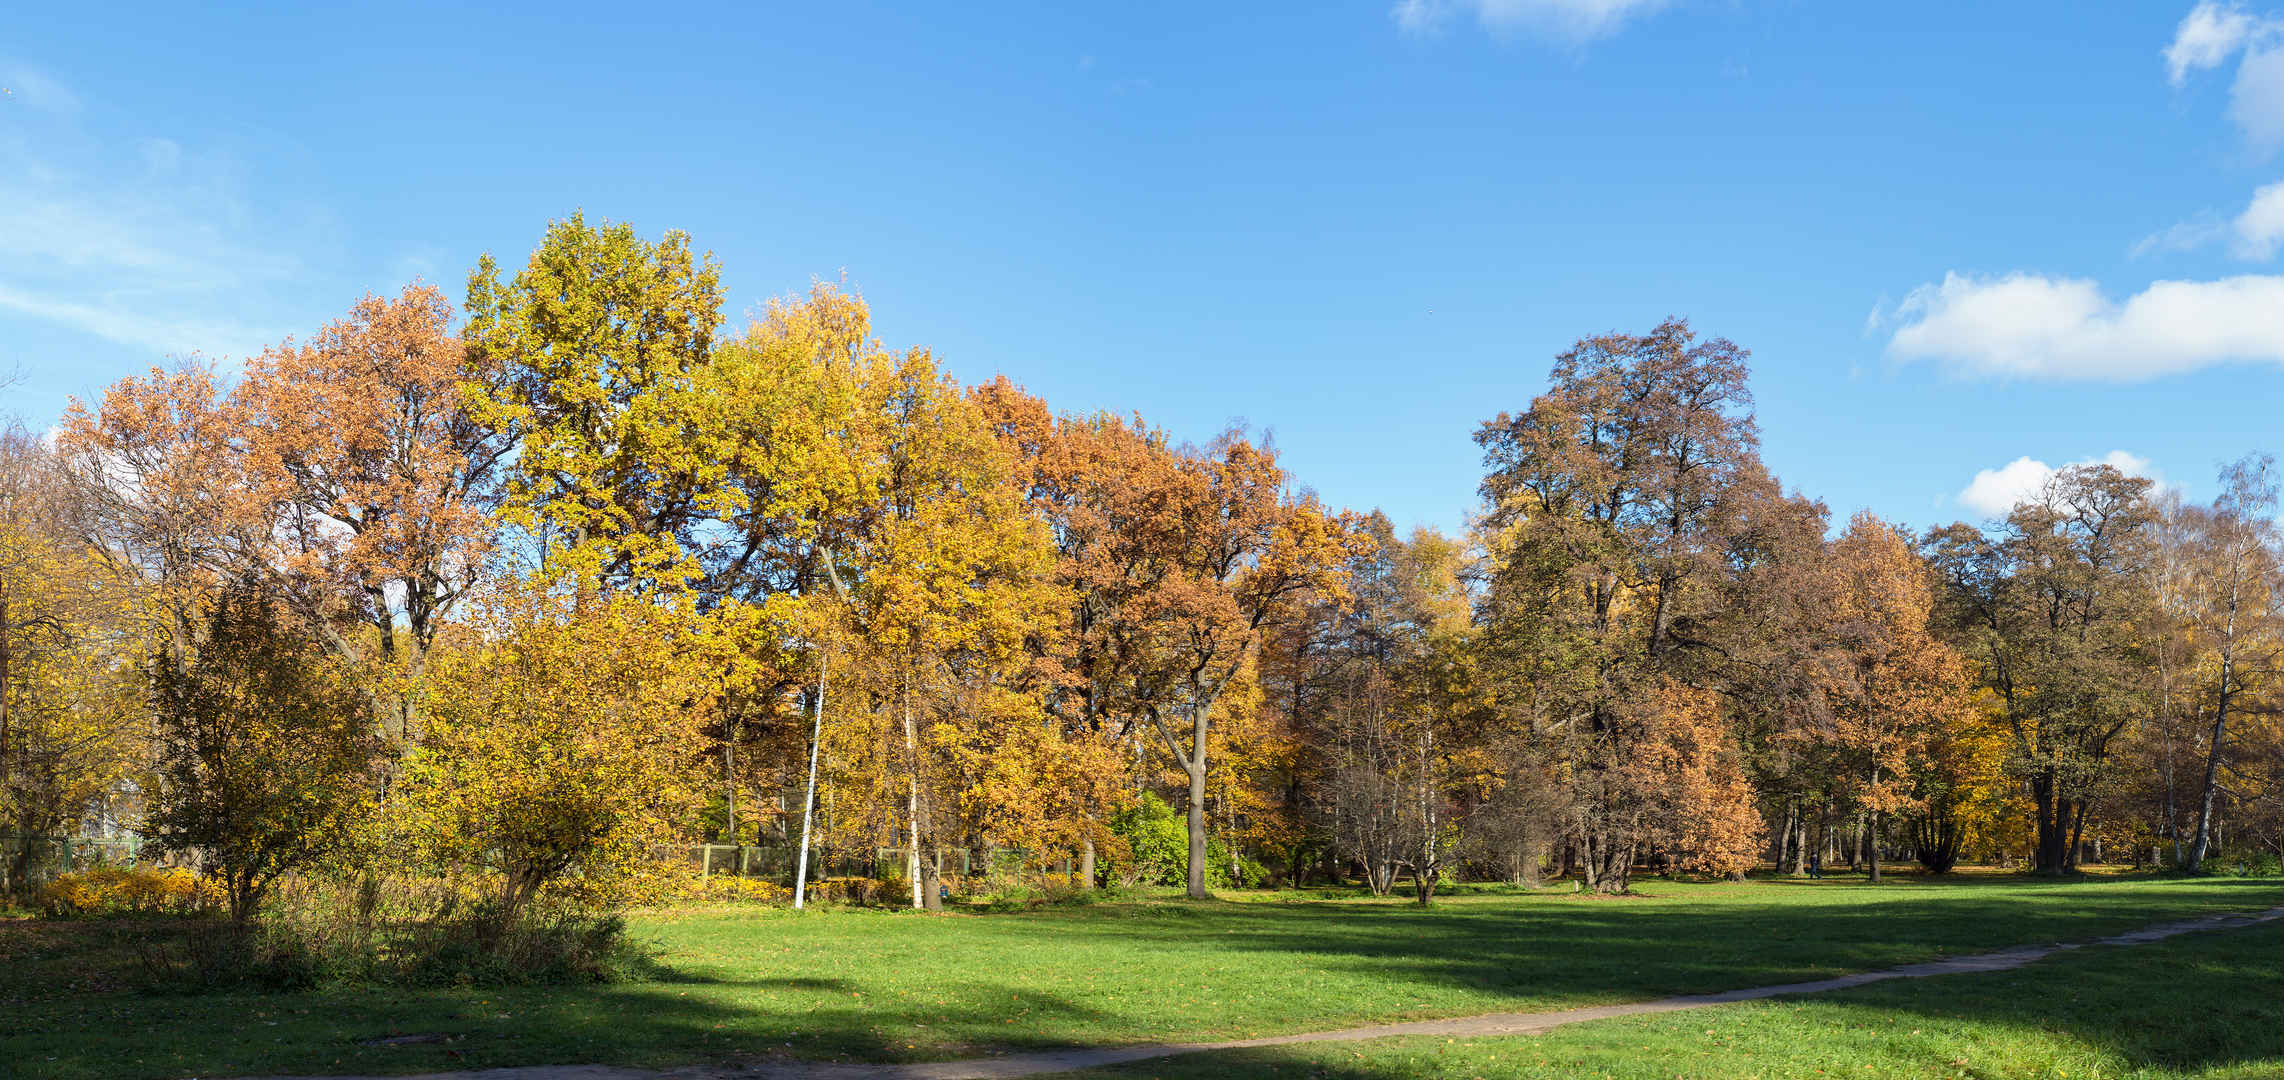 阳光明媚的公园与秋天的树木壁纸-